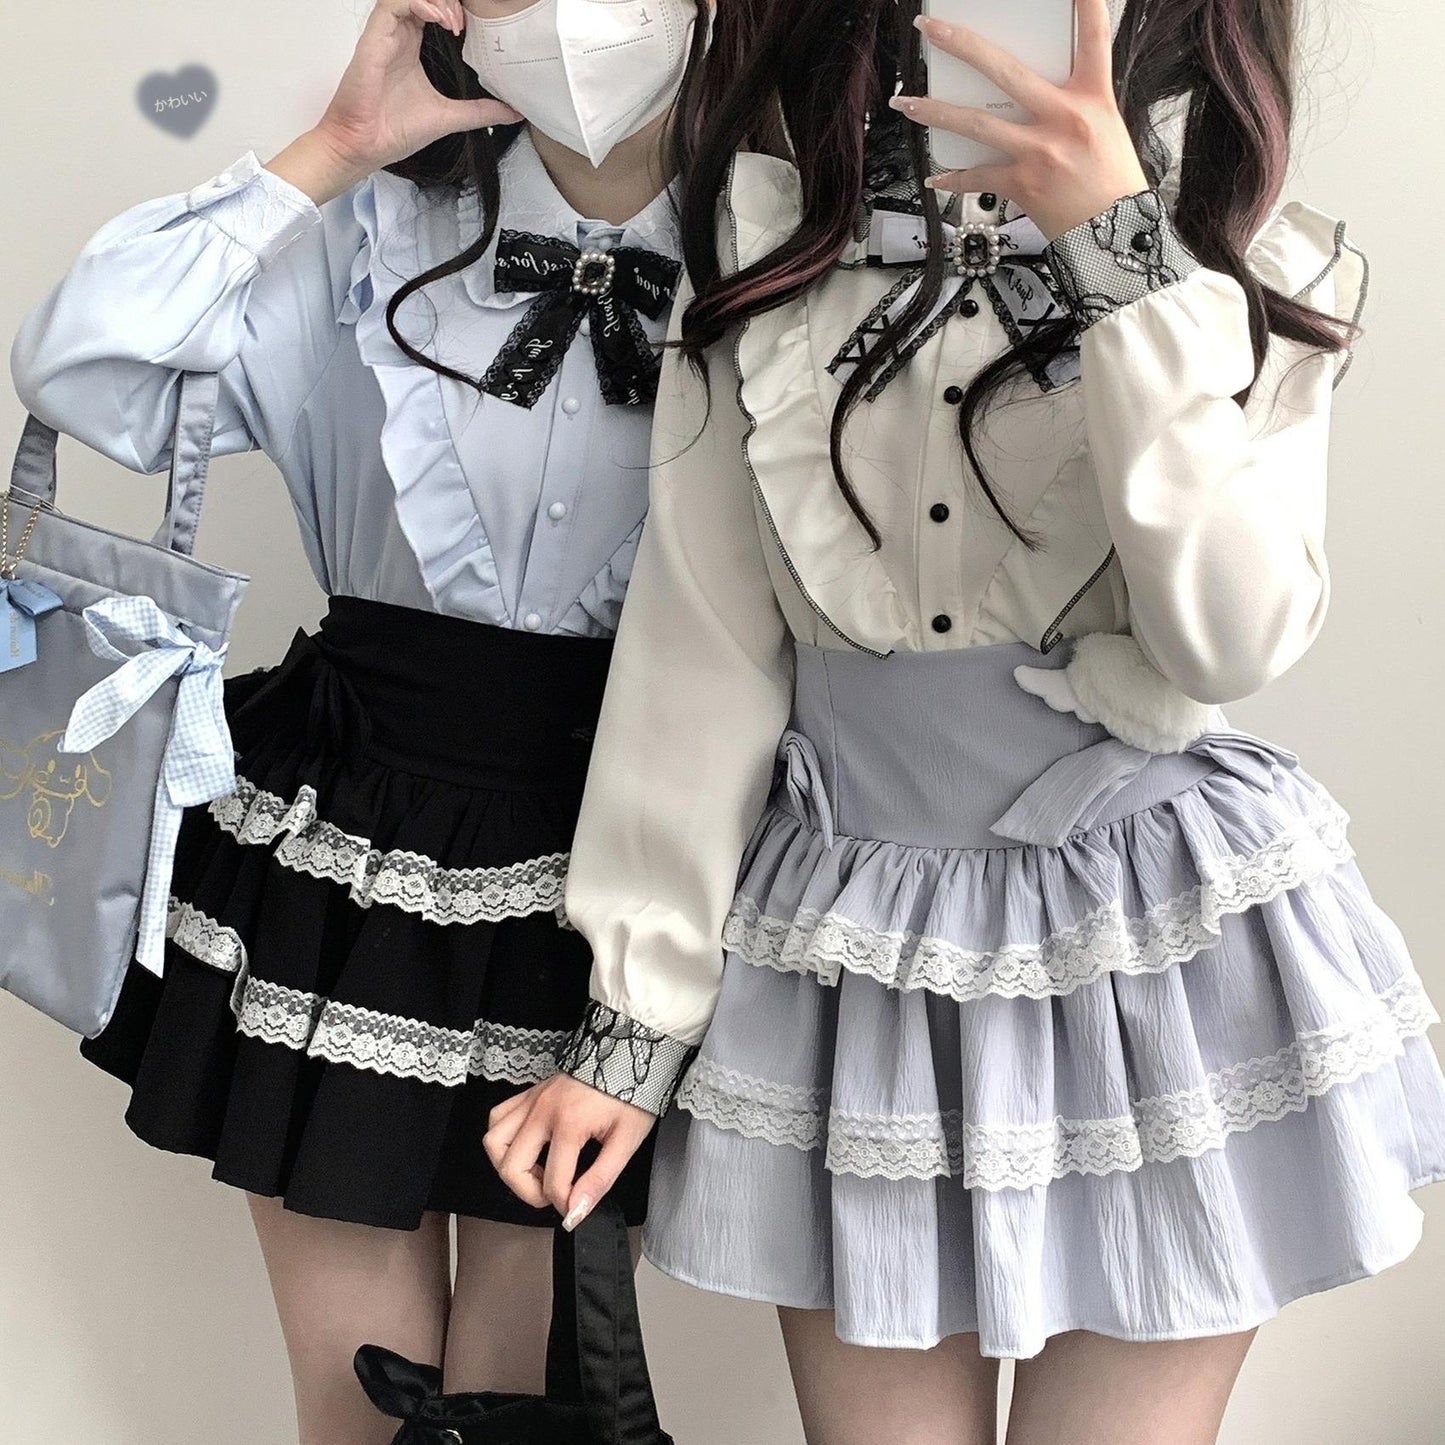 Jirai Kei Skirt Bow Double Layer Lace Cake Skirt 36774:540456